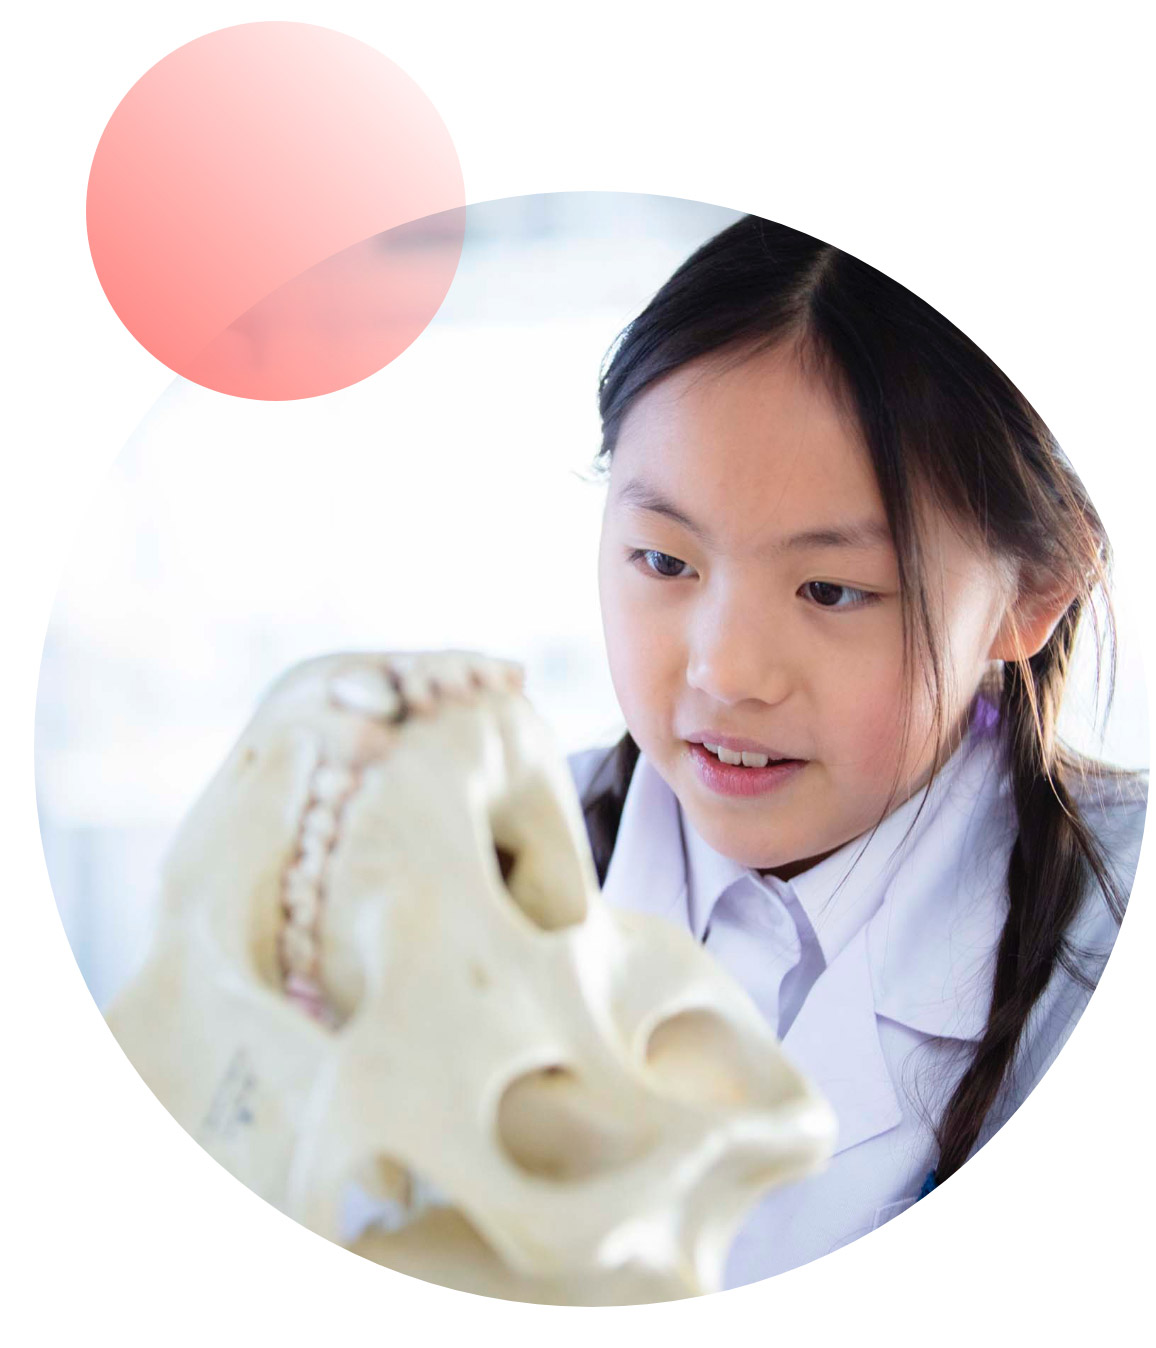 Student examining skull